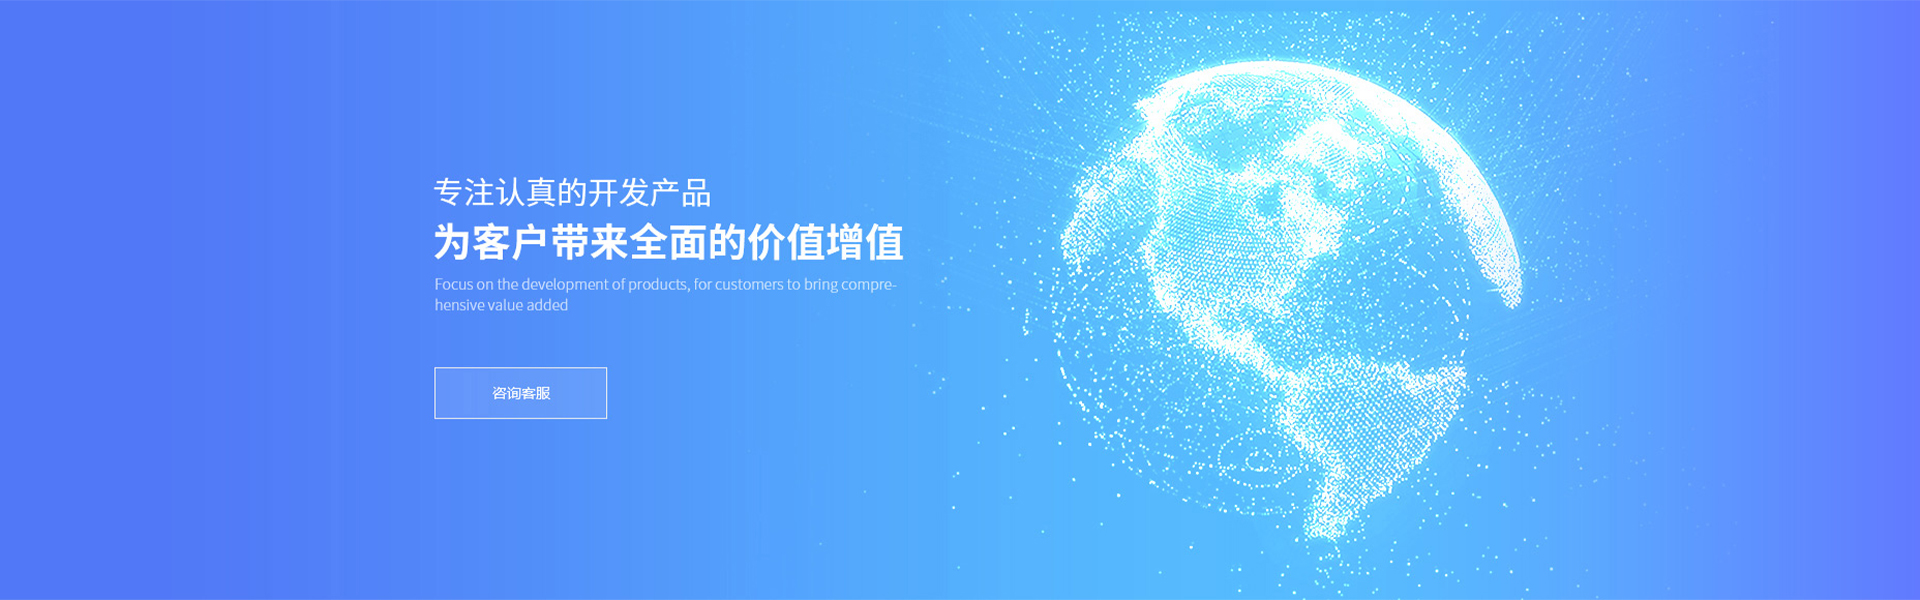 上海振緣信息技術有限公司與我司簽訂網站建設協議